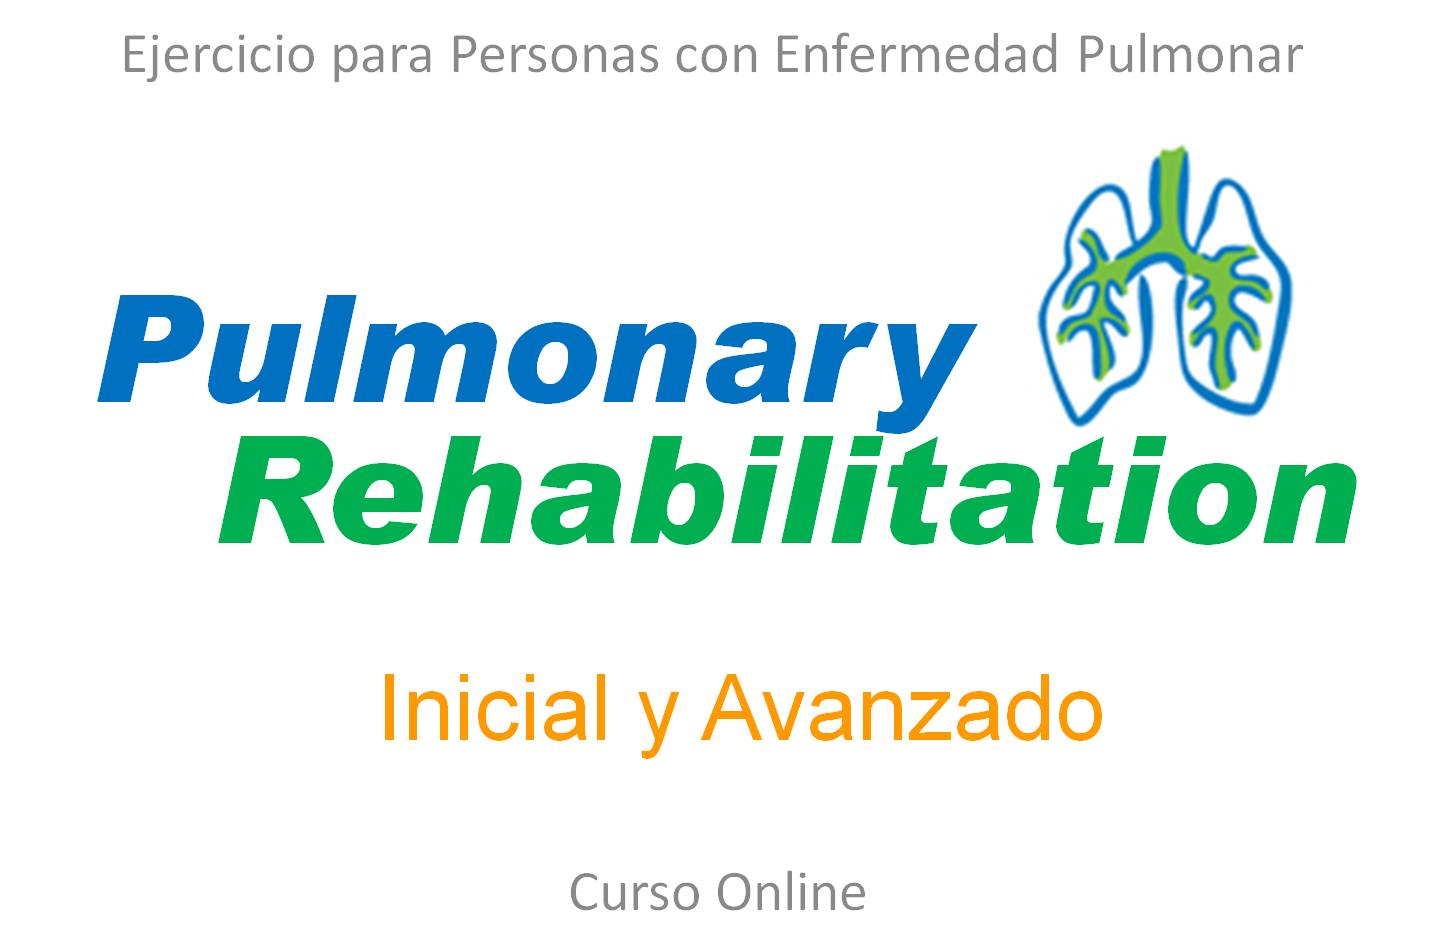 Ejercicio para Personas con Enfermedad Pulmonar Nivel I (Rehabilitación Pulmonar) “Pulmonary Rehabilitation”